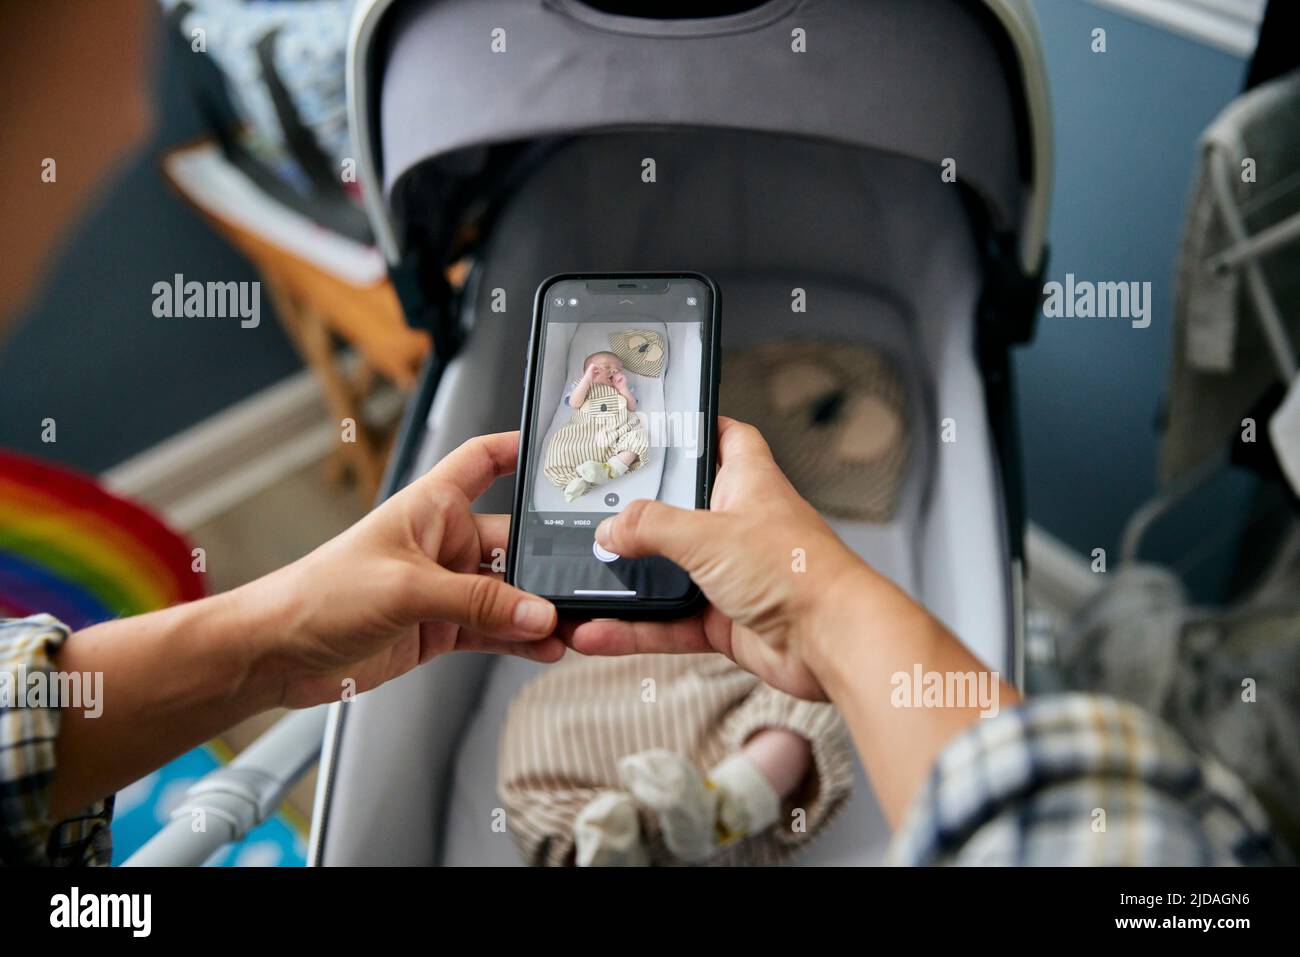 Mère prenant la photo de bébé garçon de 3 mois allongé dans une poussette à l'aide d'un smartphone Banque D'Images